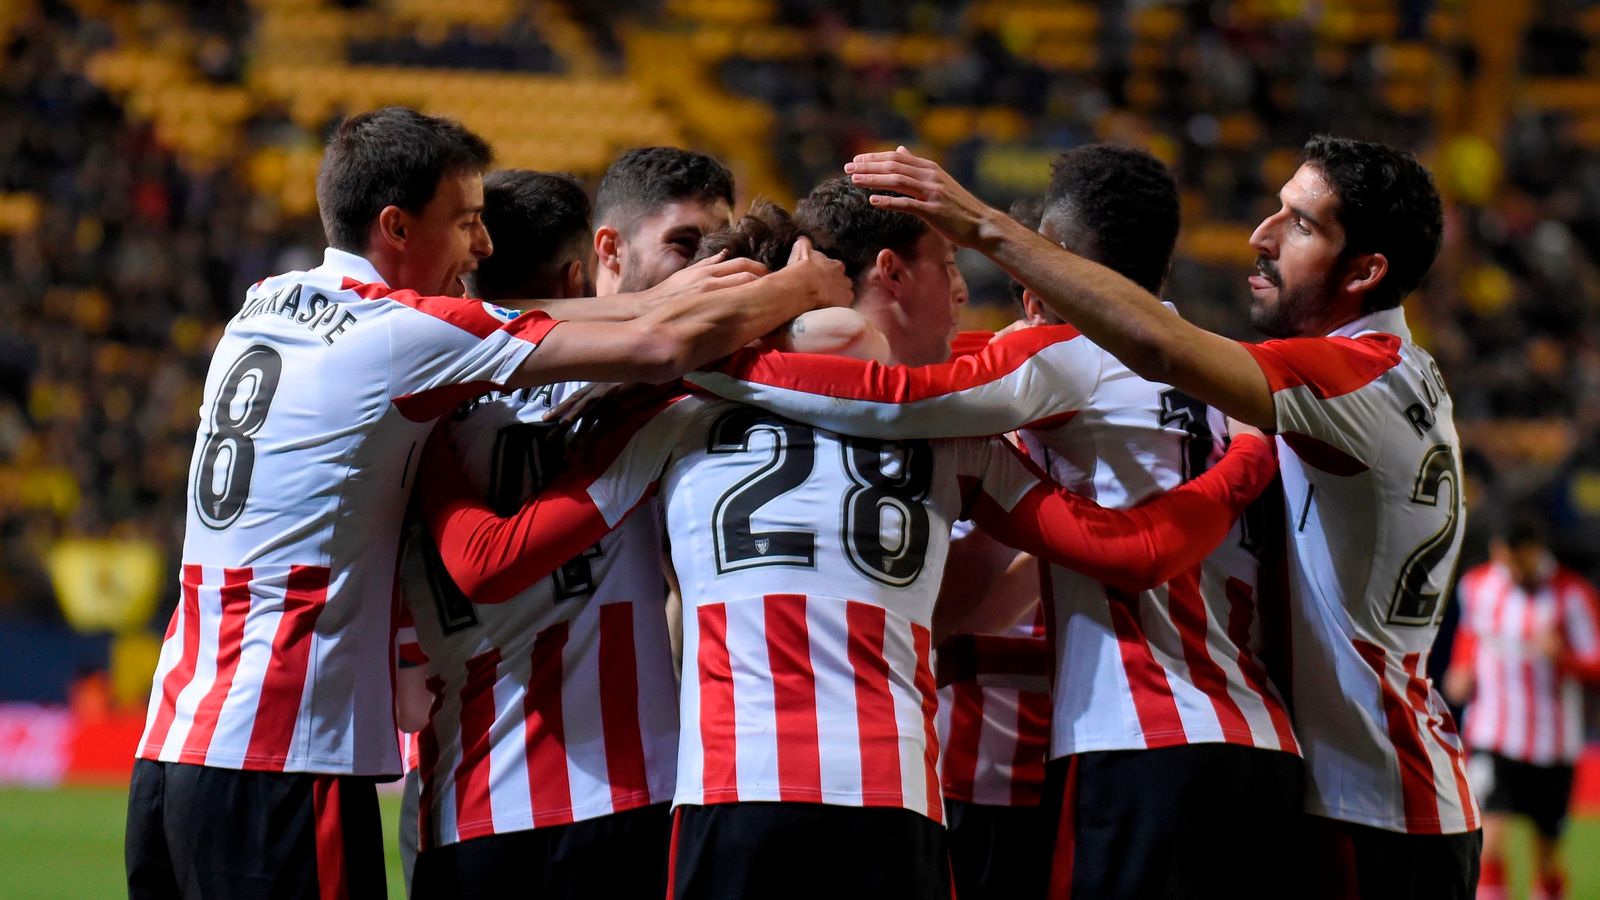 LaLiga: Athletic Bilbao tops Sociedad to move up to 3rd; Villarreal loses  again